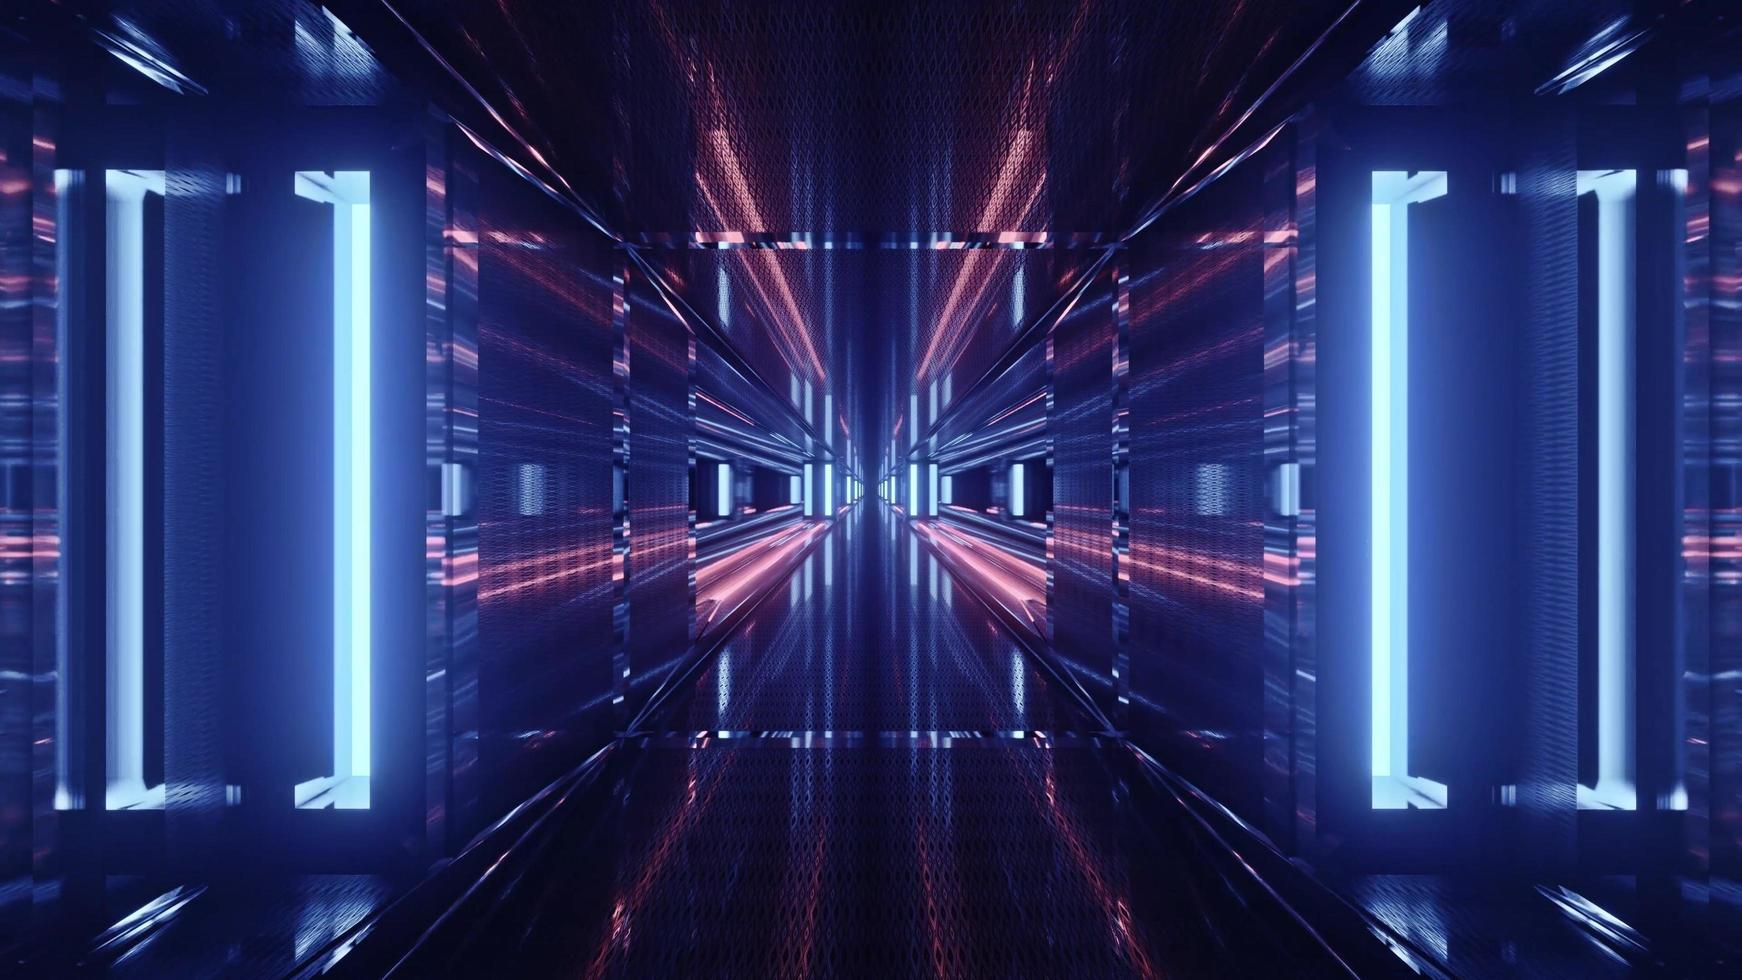 ilustração 3d futurística do túnel em perspectiva com painéis brilhantes foto